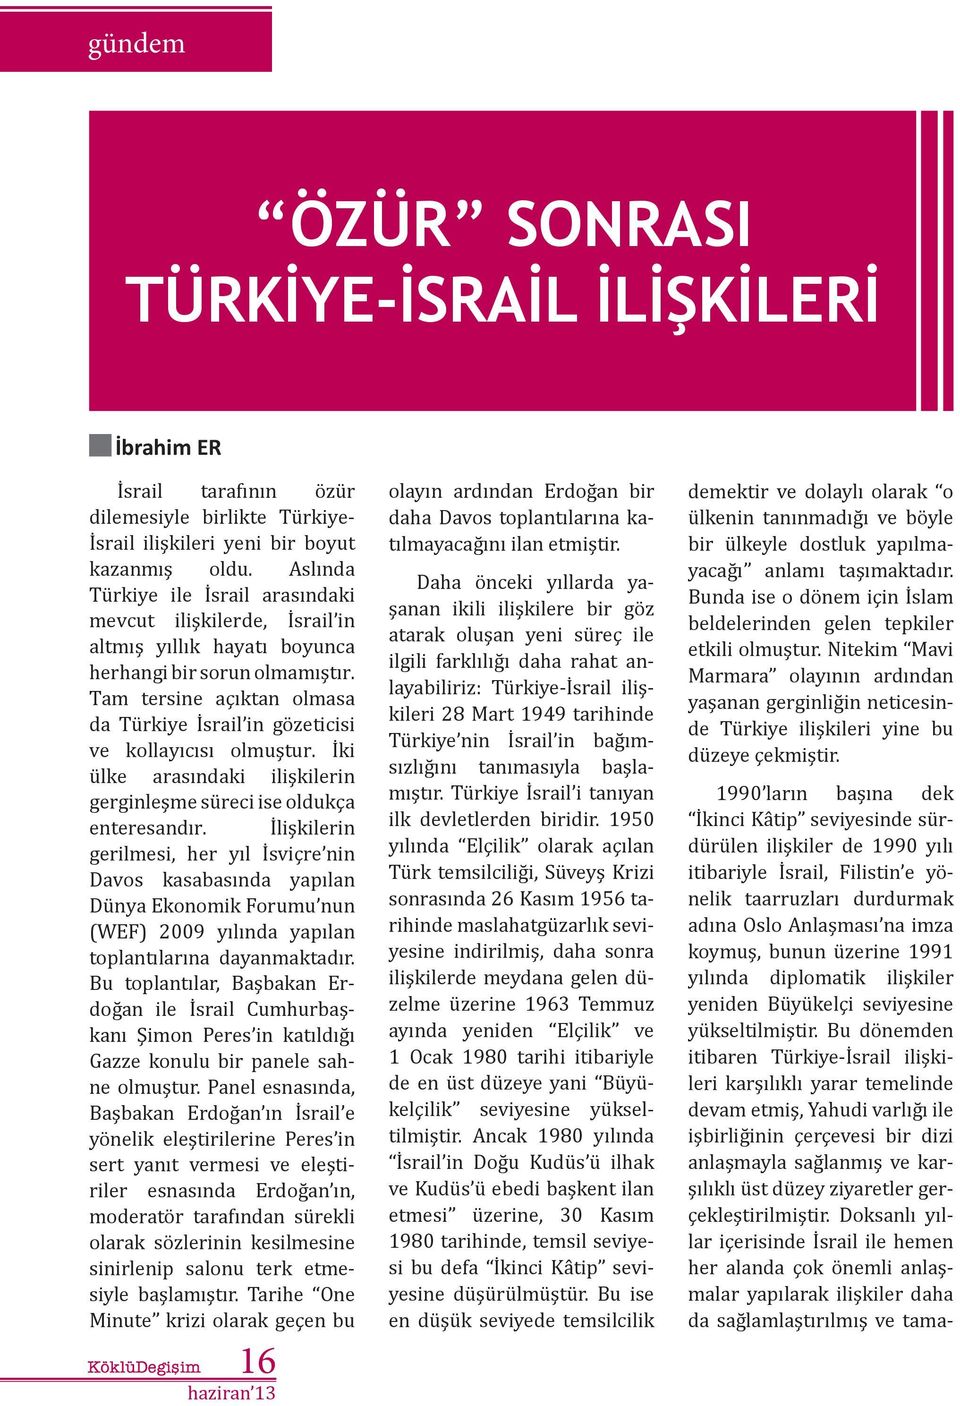 Tam tersine açıktan olmasa da Türkiye İsrail in gözeticisi ve kollayıcısı olmuştur. İki ülke arasındaki ilişkilerin gerginleşme süreci ise oldukça enteresandır.